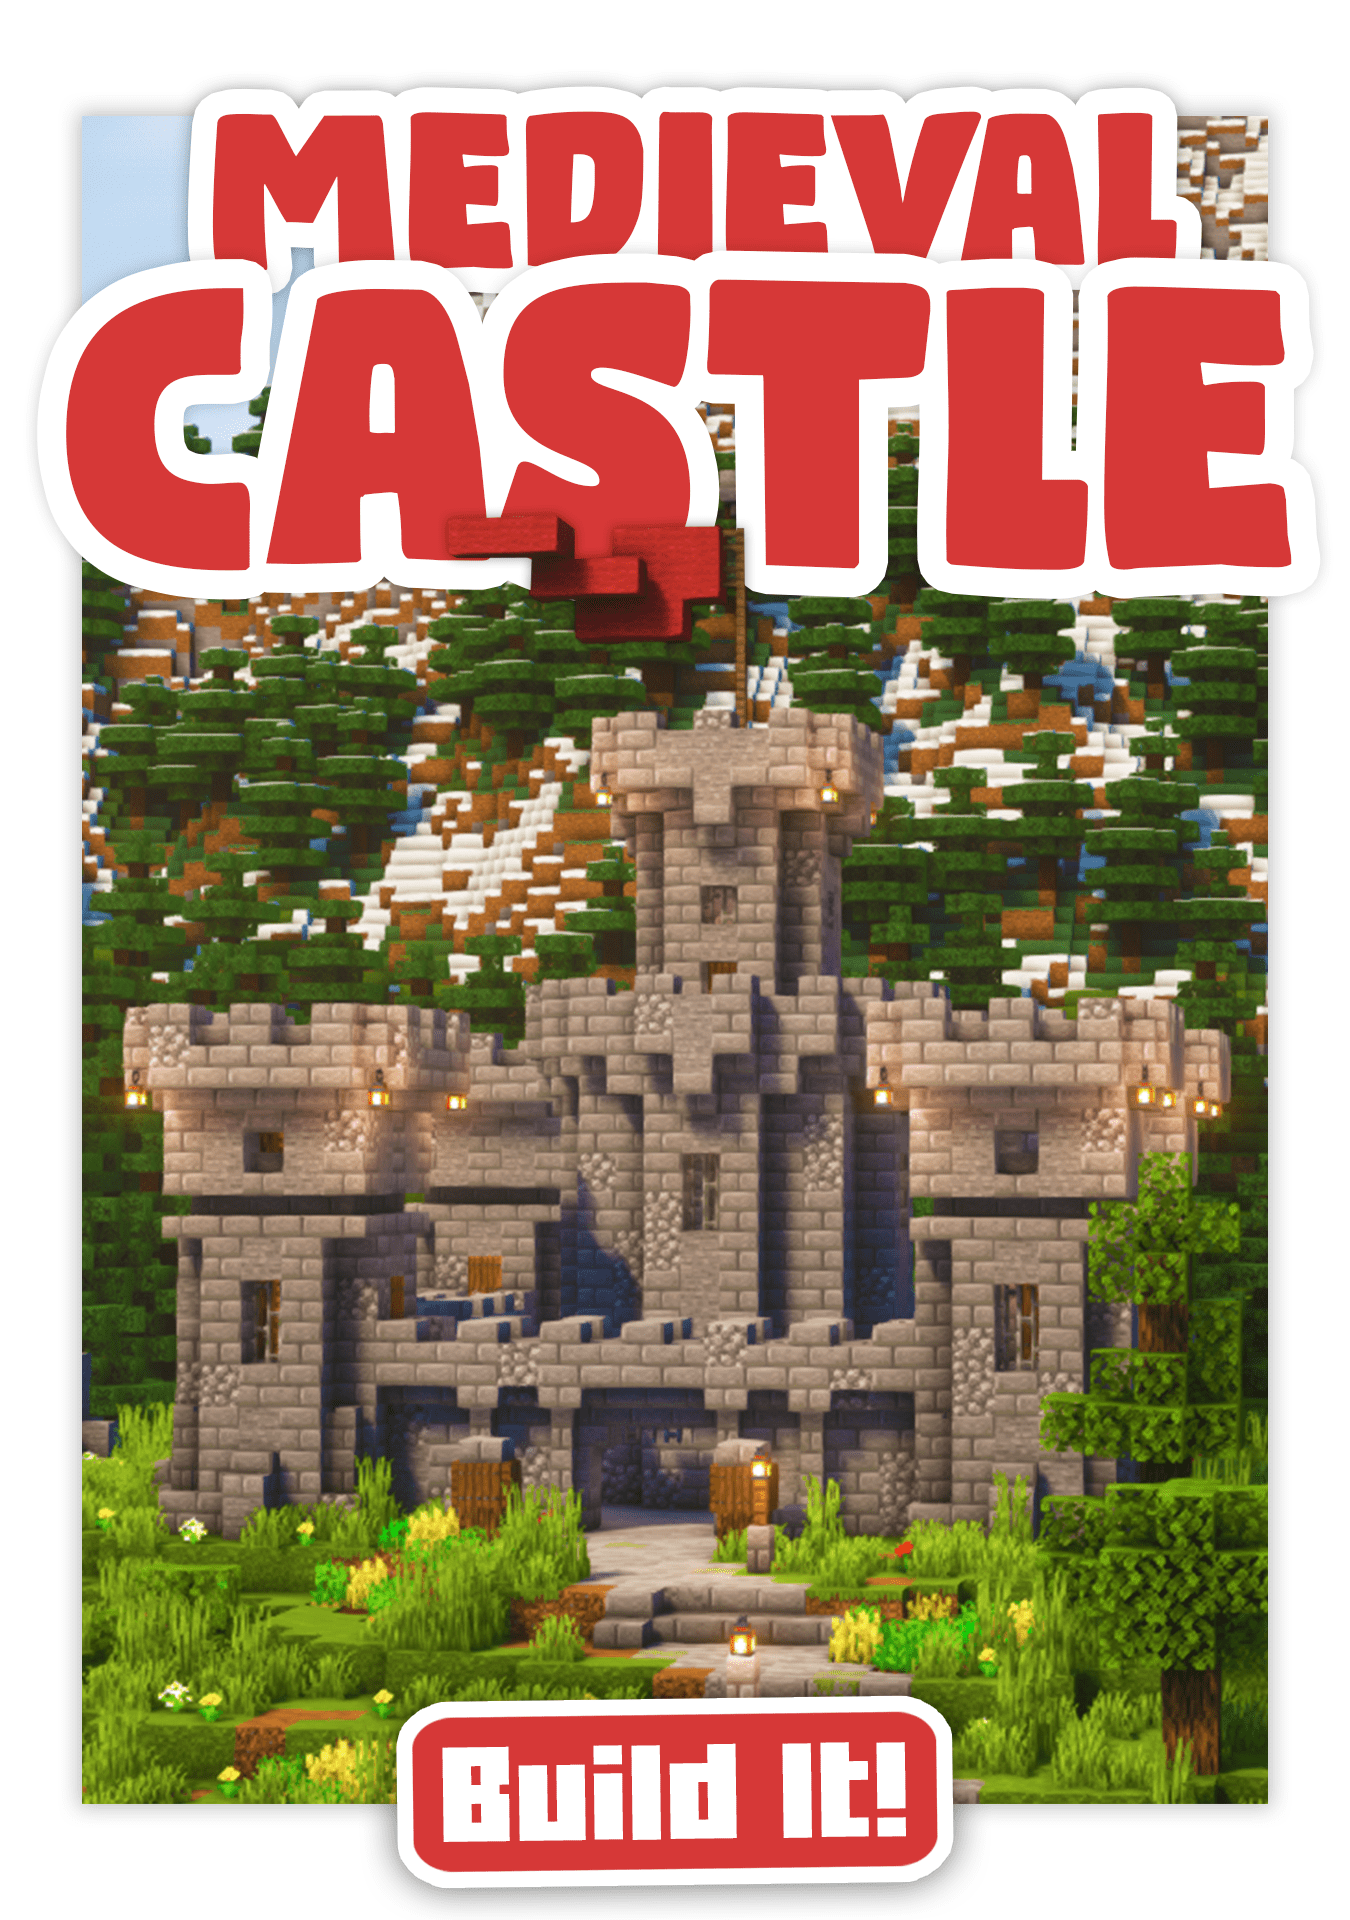 Castle copy 2